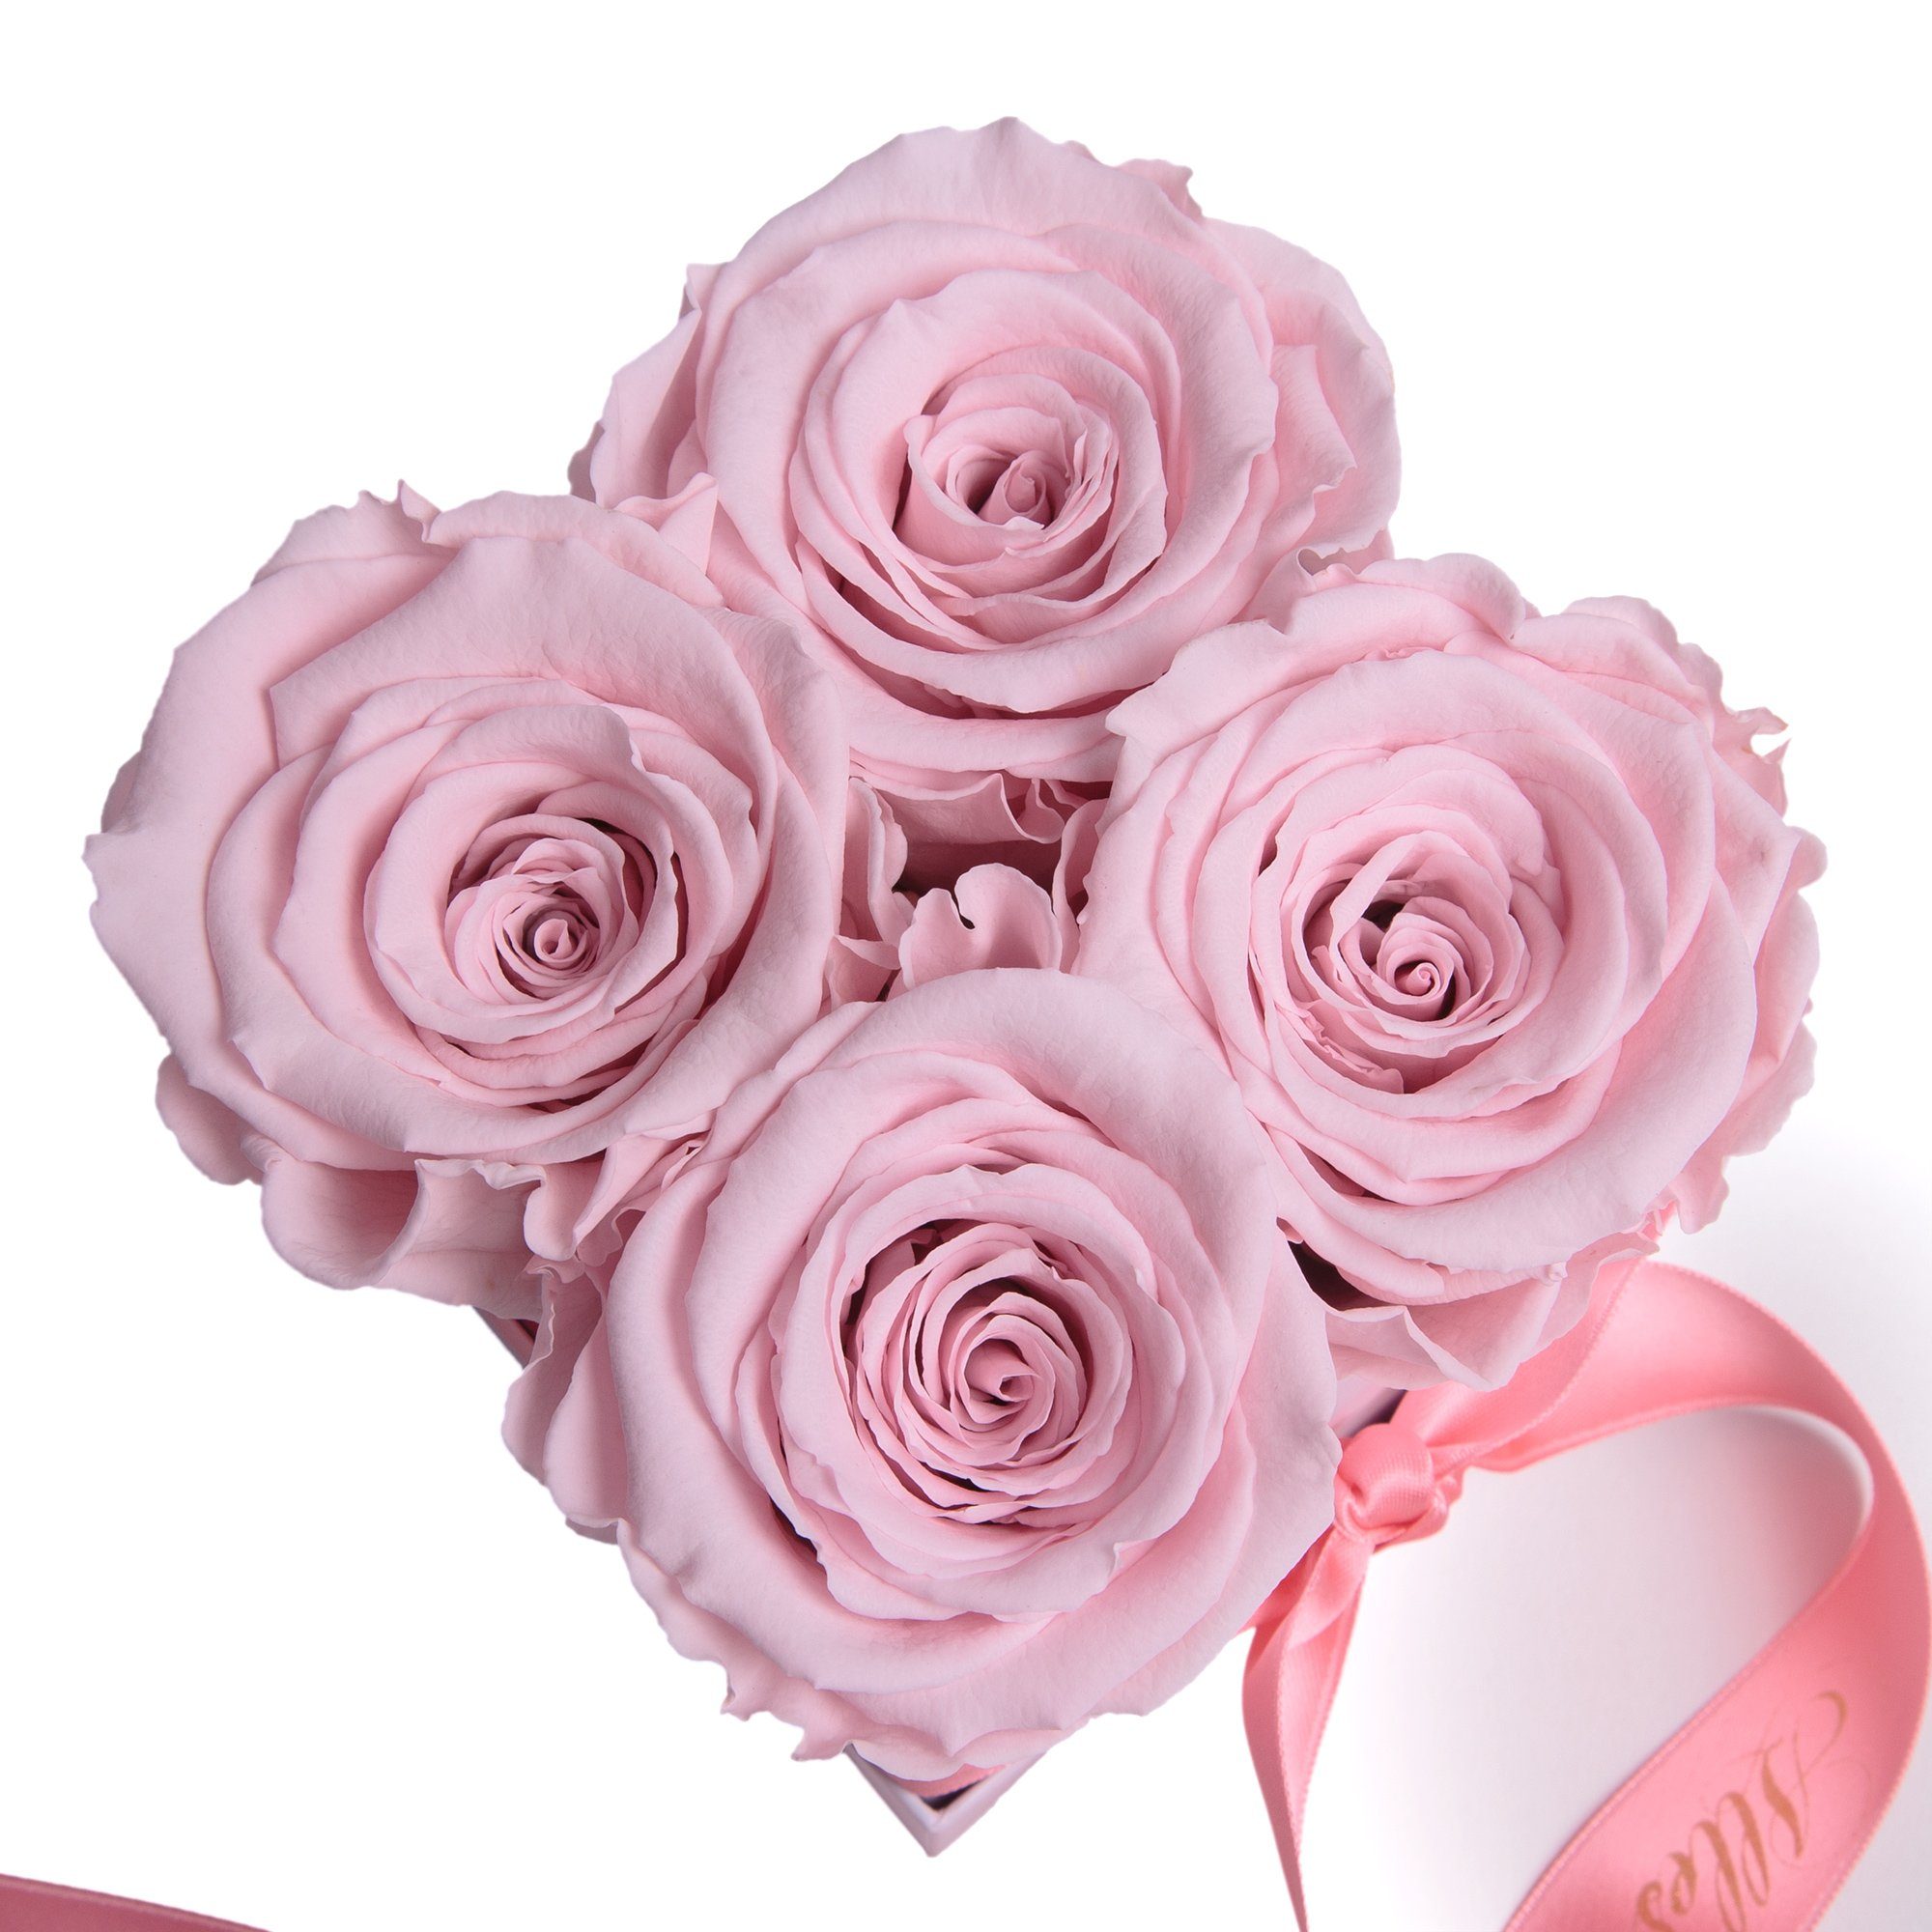 ROSEMARIE SCHULZ Heidelberg Echte Liebe Infinity Geschenk, Rosenbox zum Geburtstag Blumen Dekoobjekt 3 haltbar bis Jahre zu rosa Rose Alles